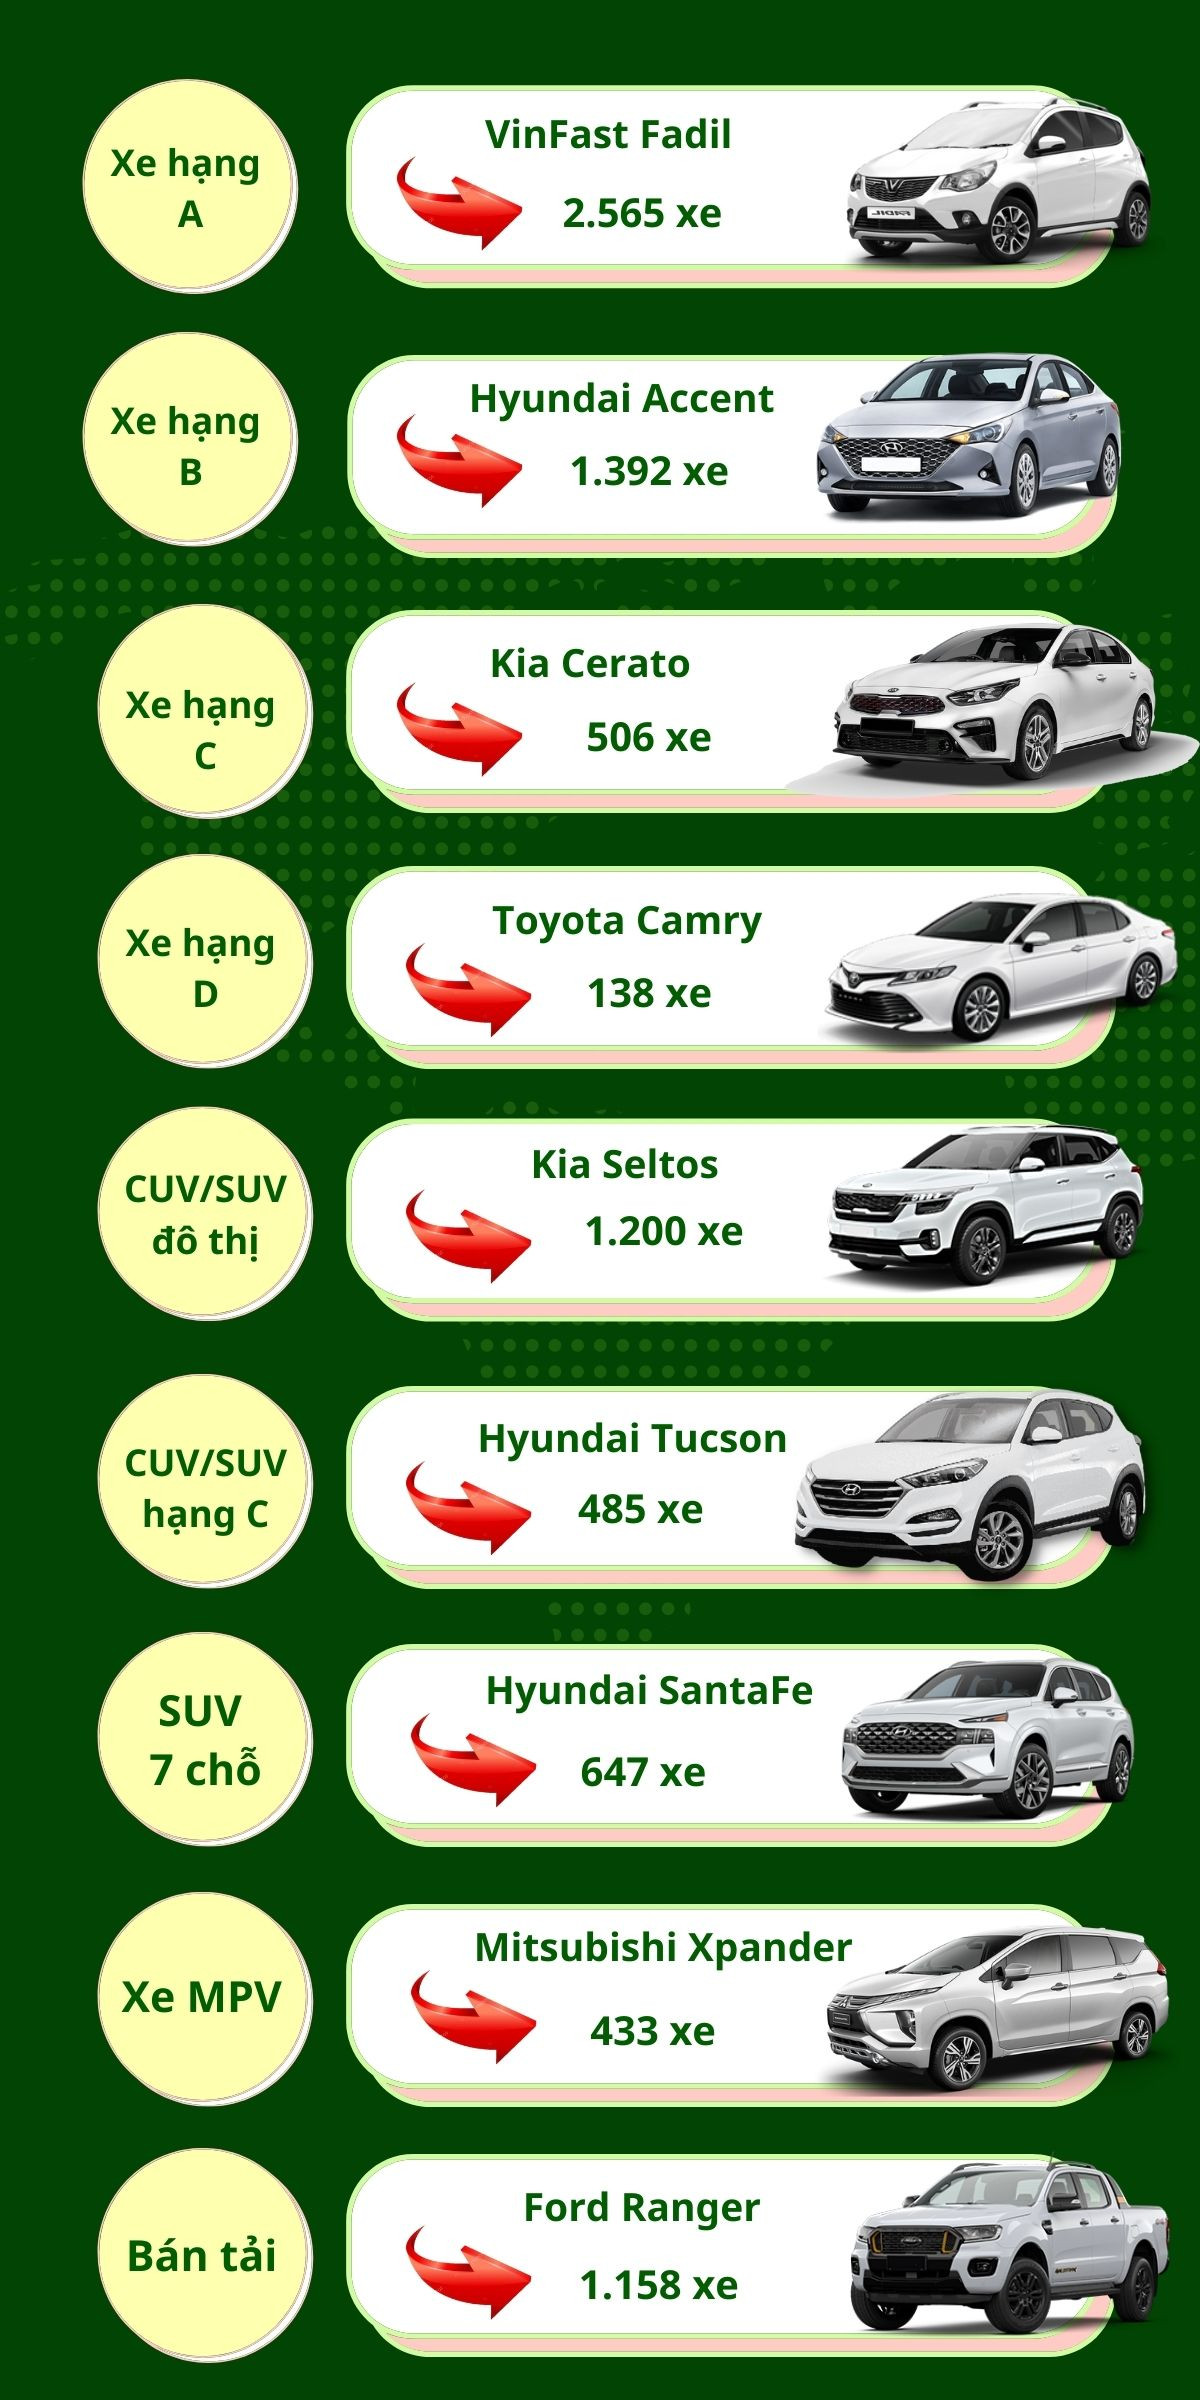 Những mẫu xe bán chạy nhất 9 phân khúc tại Việt Nam tháng 9/2021